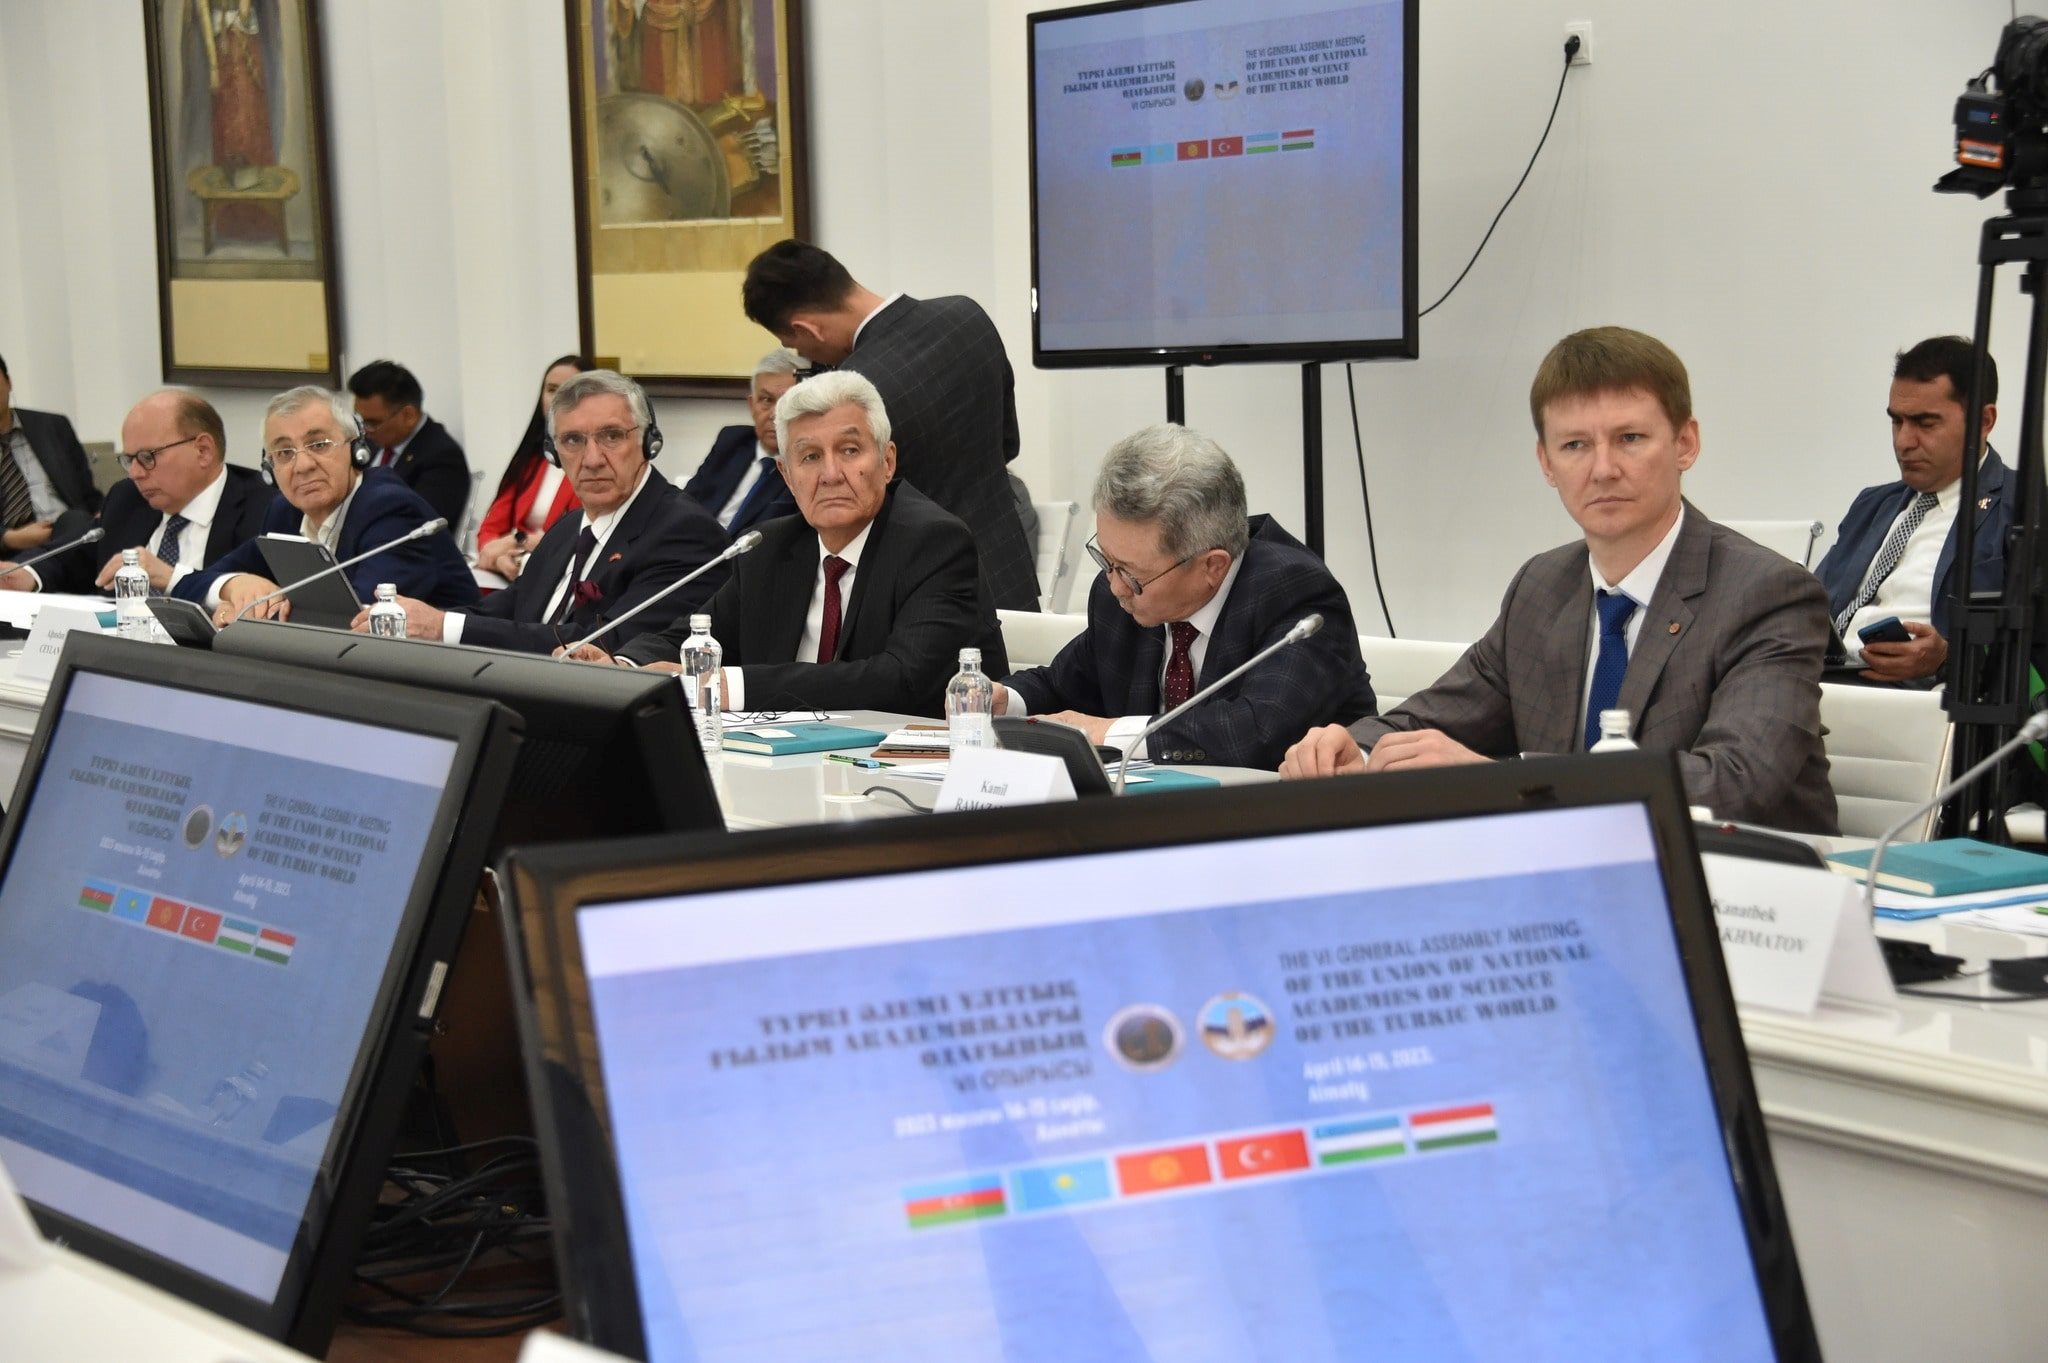 Состоялось VI заседание Генеральной Ассамблеи Союза национальных академий наук тюркского мира